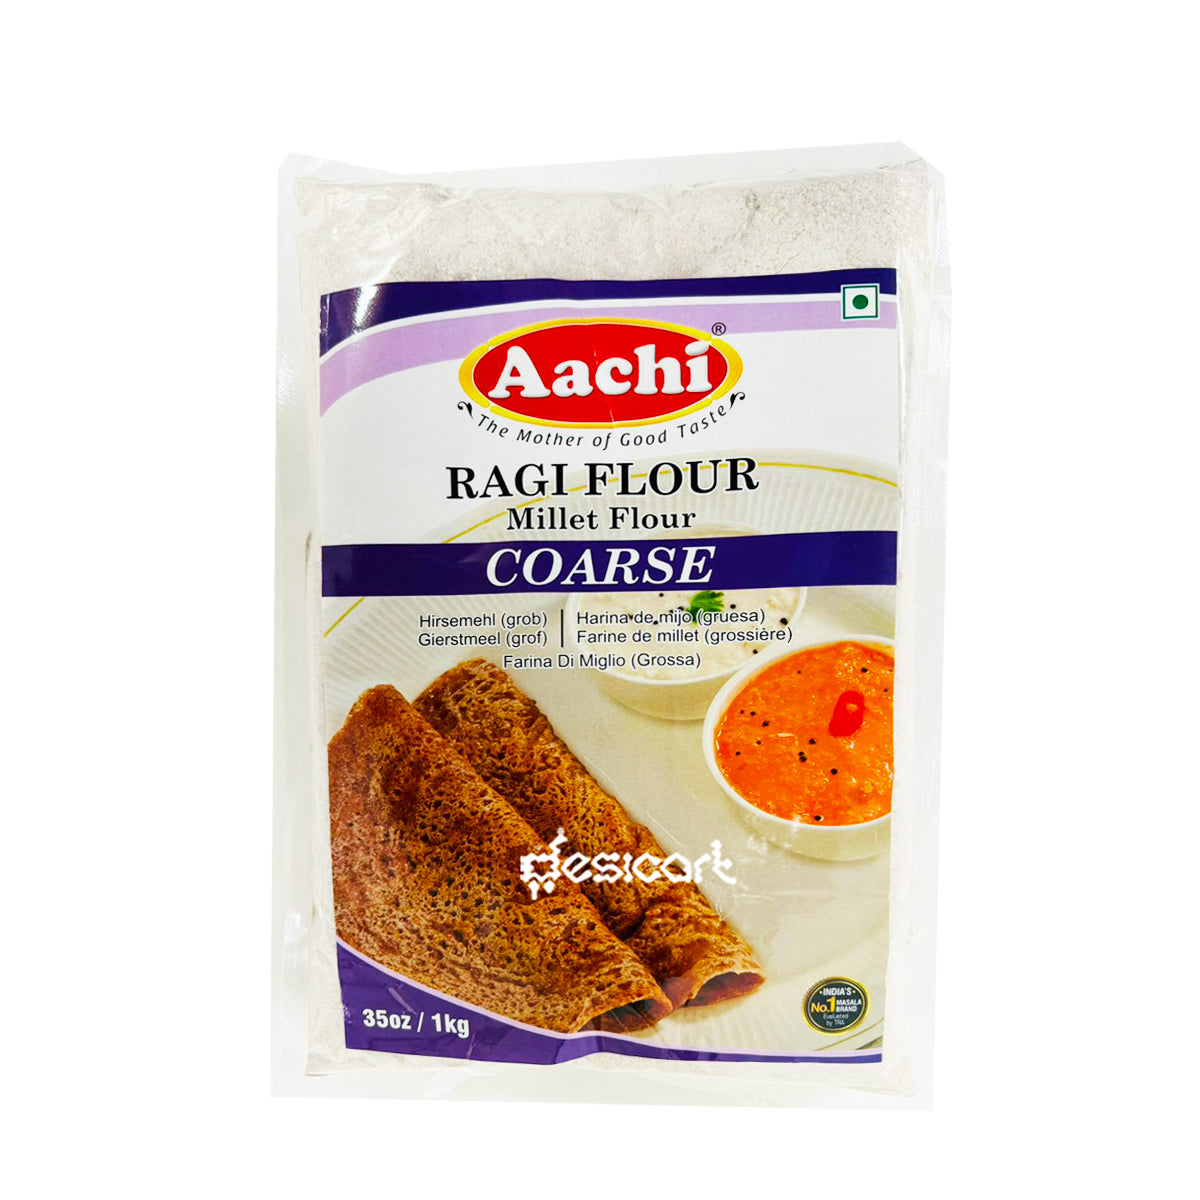 Aachi Coarse Ragi Flour 1kg